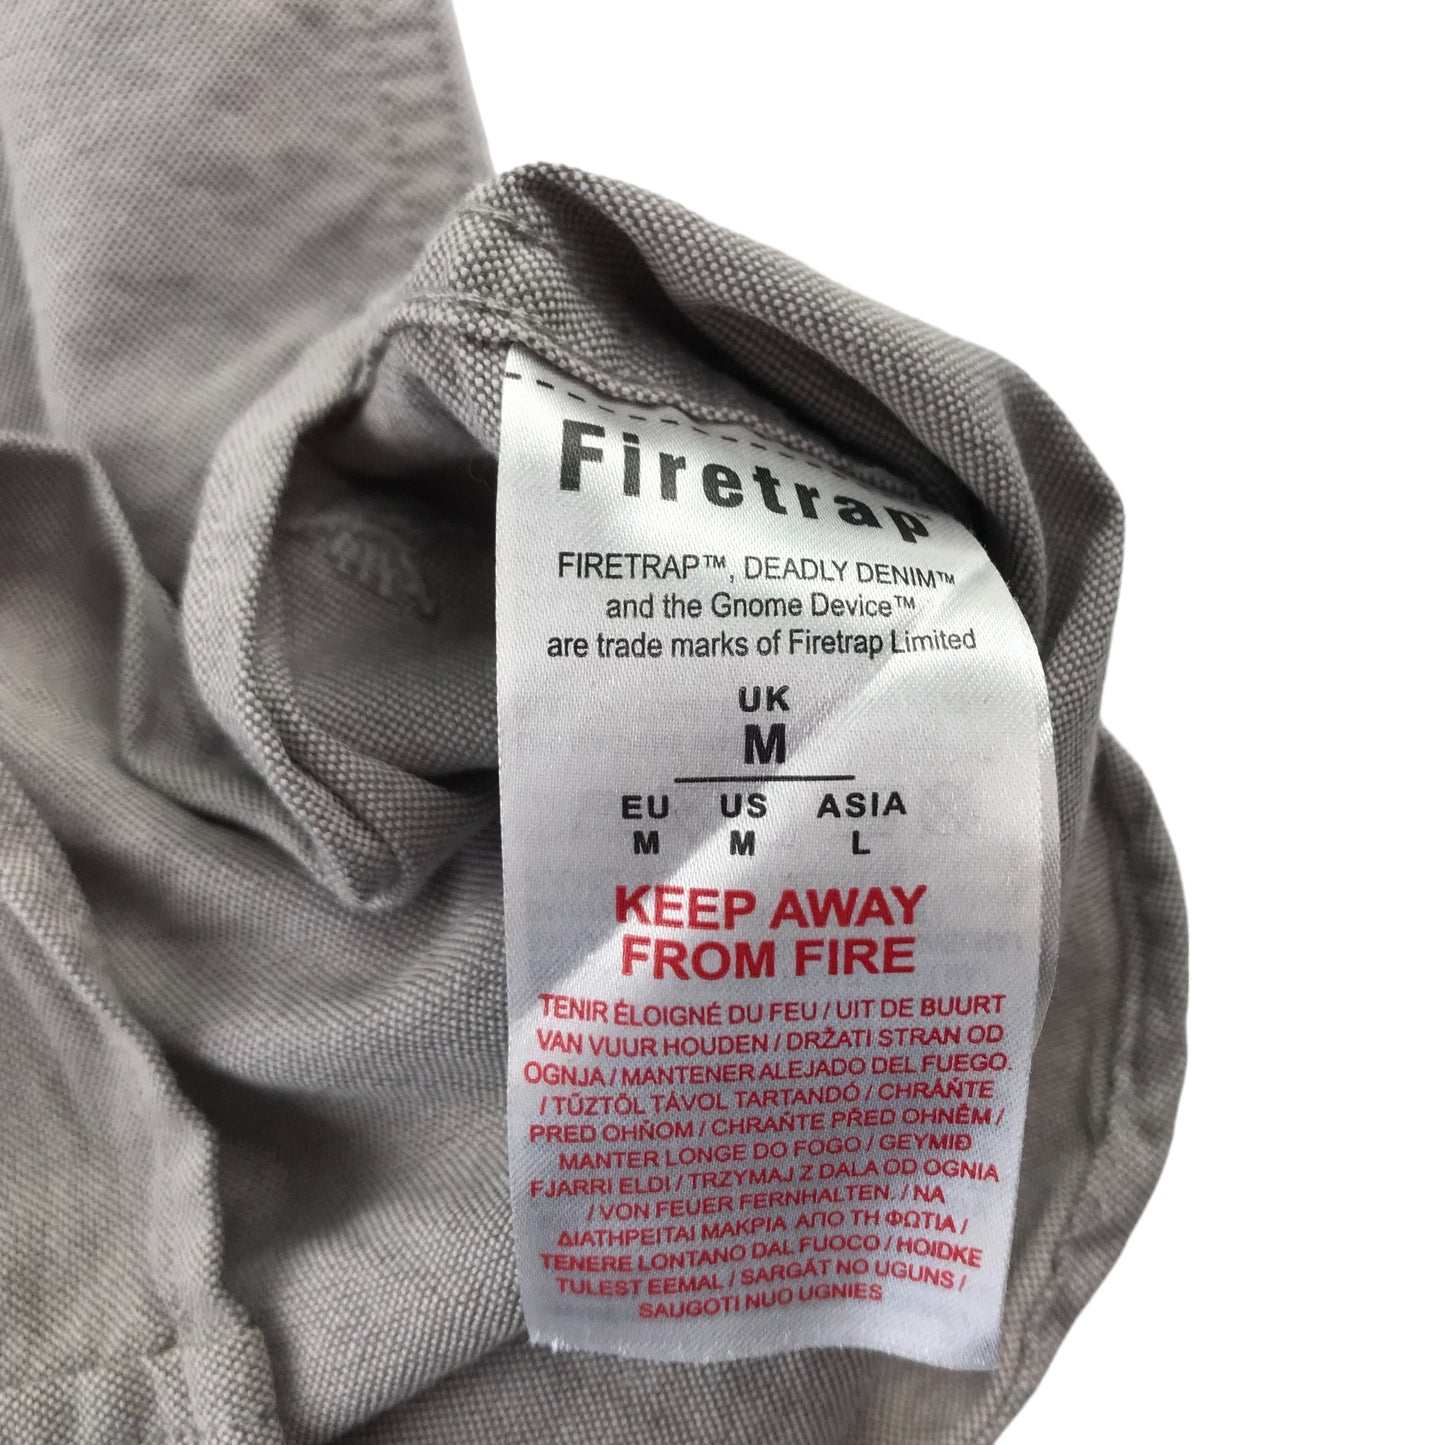 Firetrap Shirt Mens Medium Grey Plain Pattern Short Sleeve Button Up Cotton